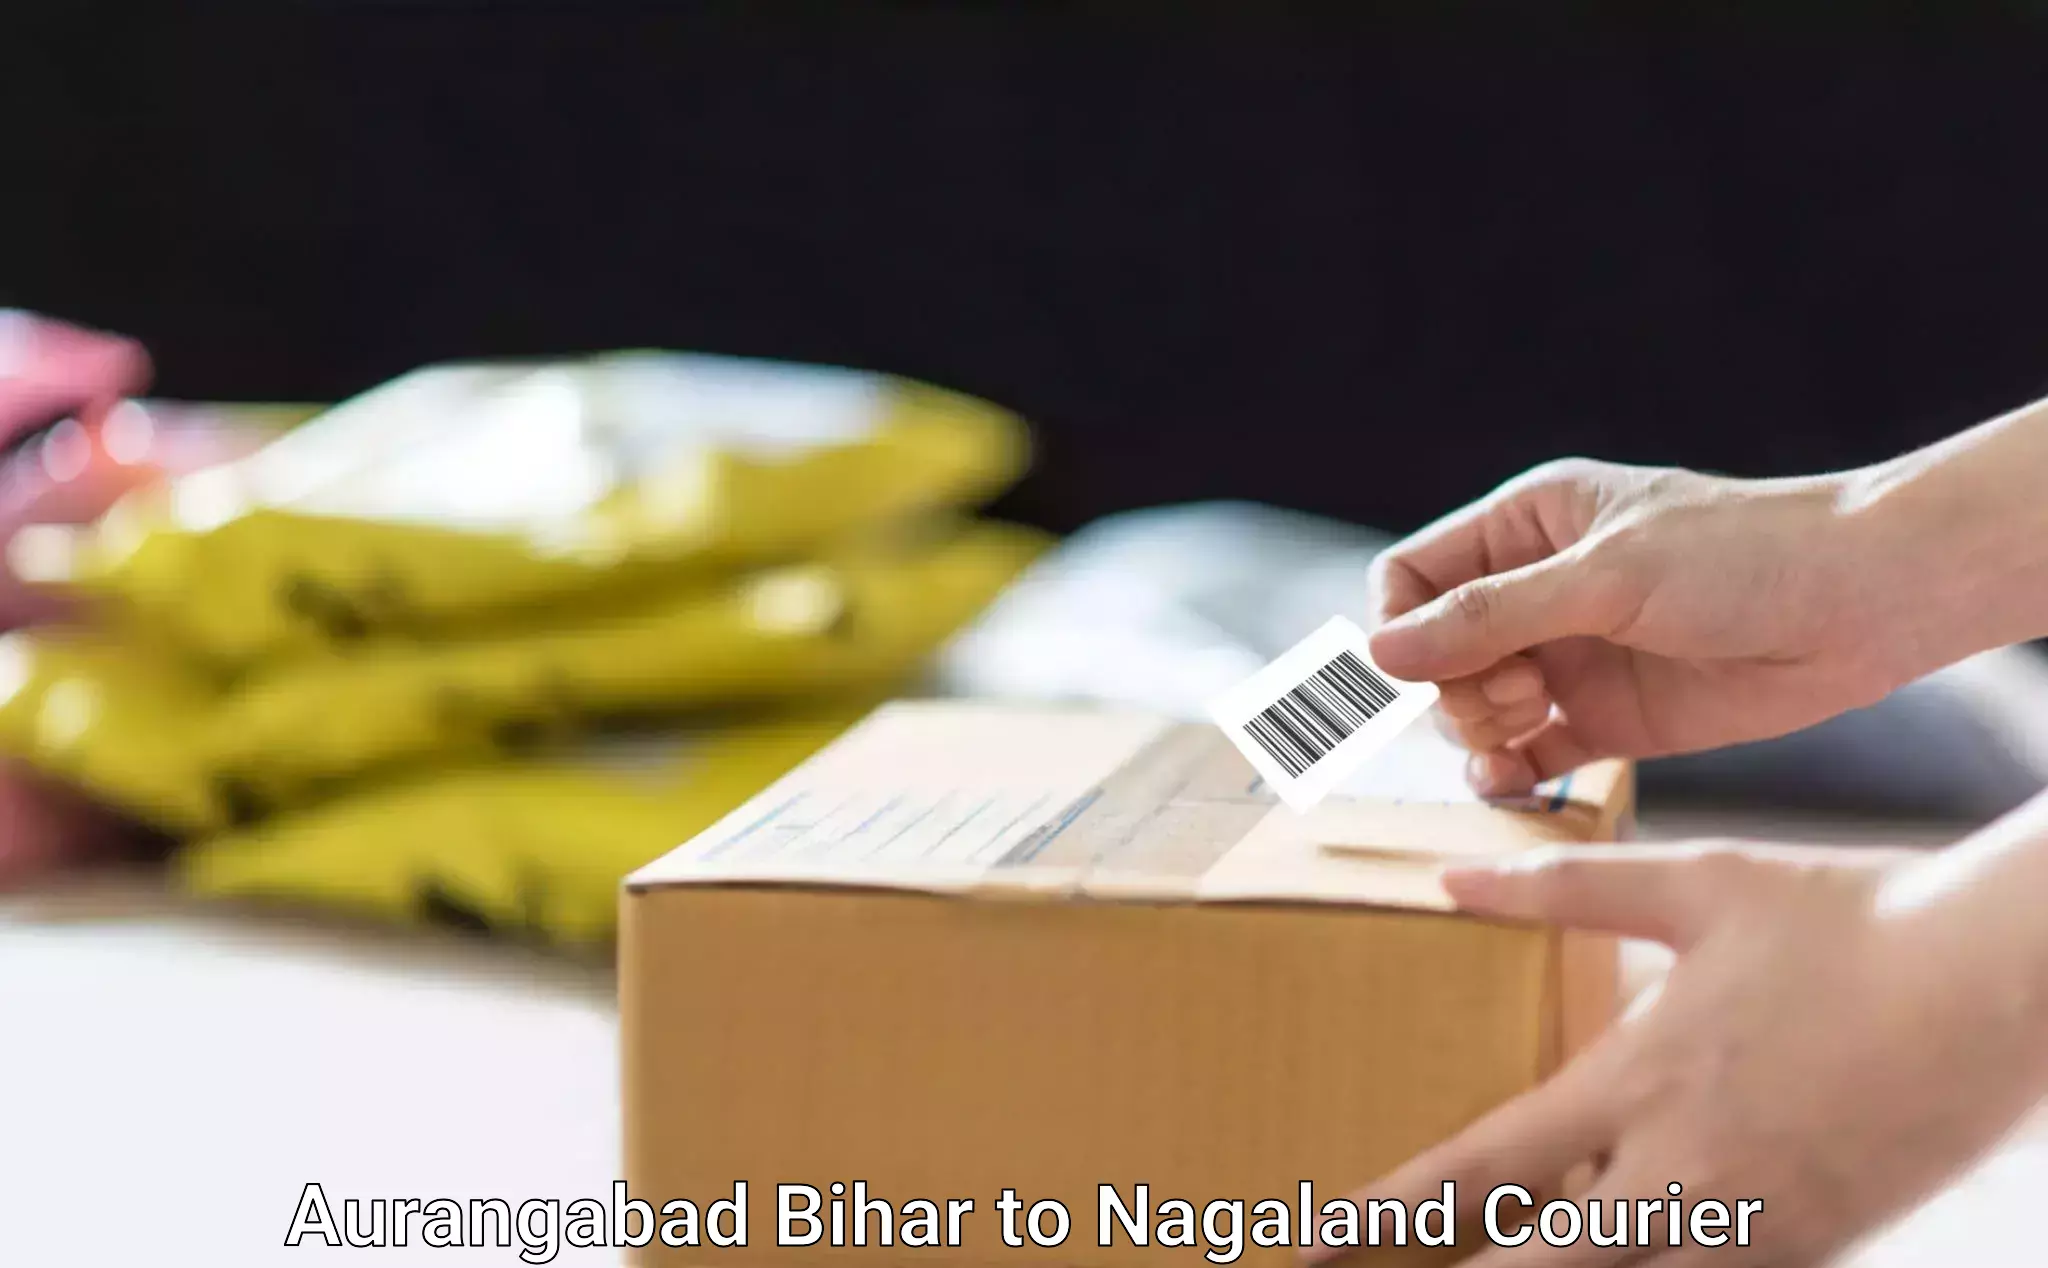 Personalized moving plans Aurangabad Bihar to Nagaland